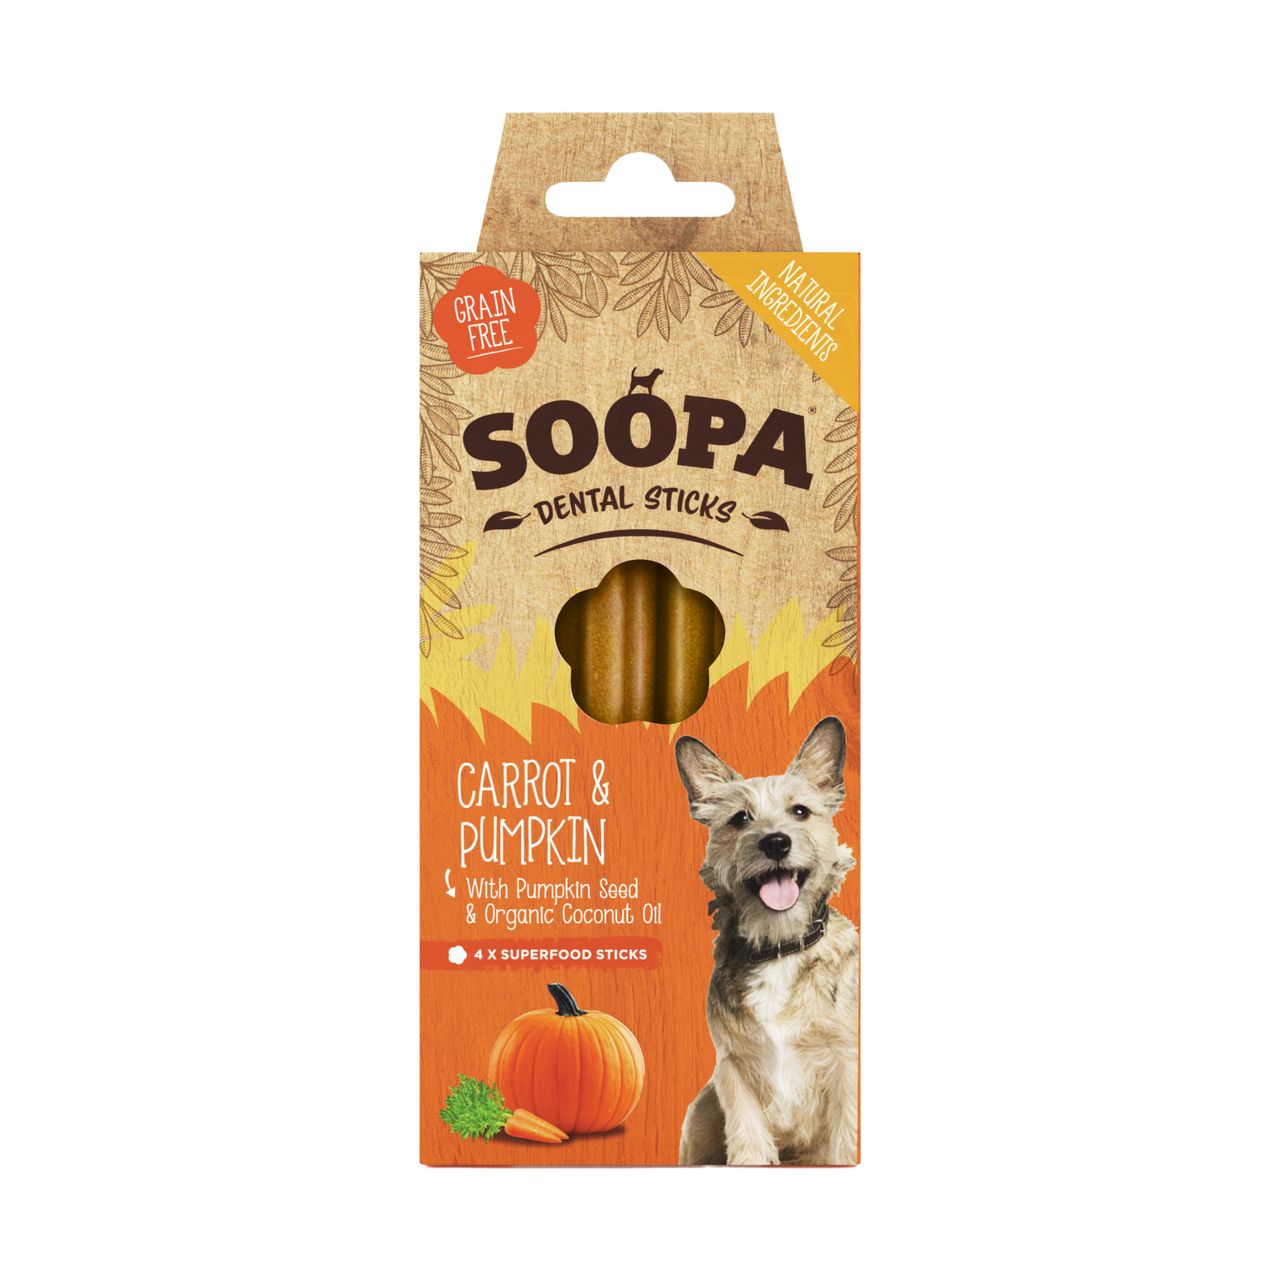 Soopa Dental Sticks - Carrot and Pumpkin